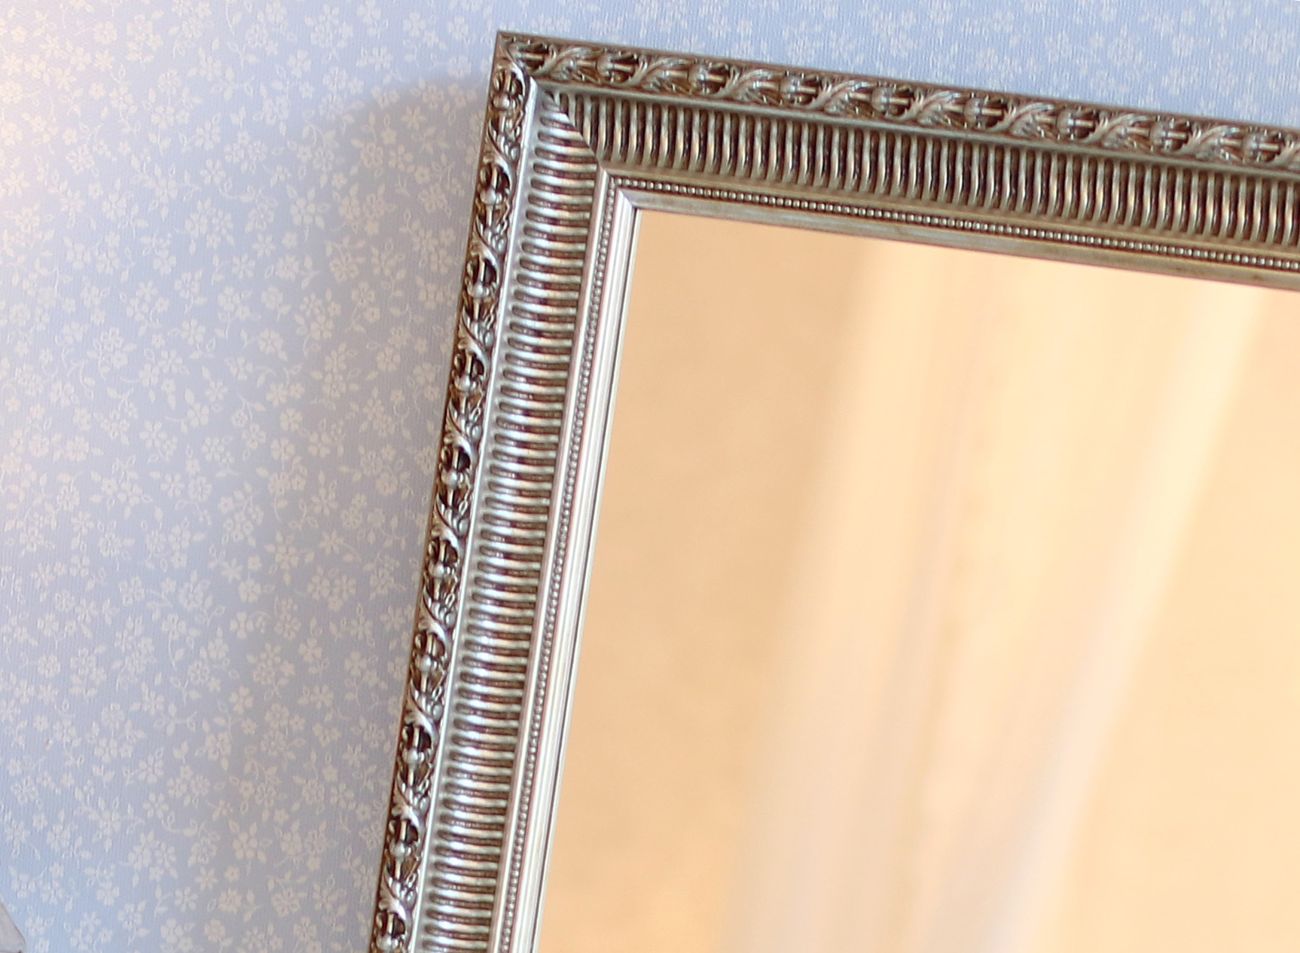 Zrcadlo v tradičním stříbrném rámu - detail rámu | © Frame it